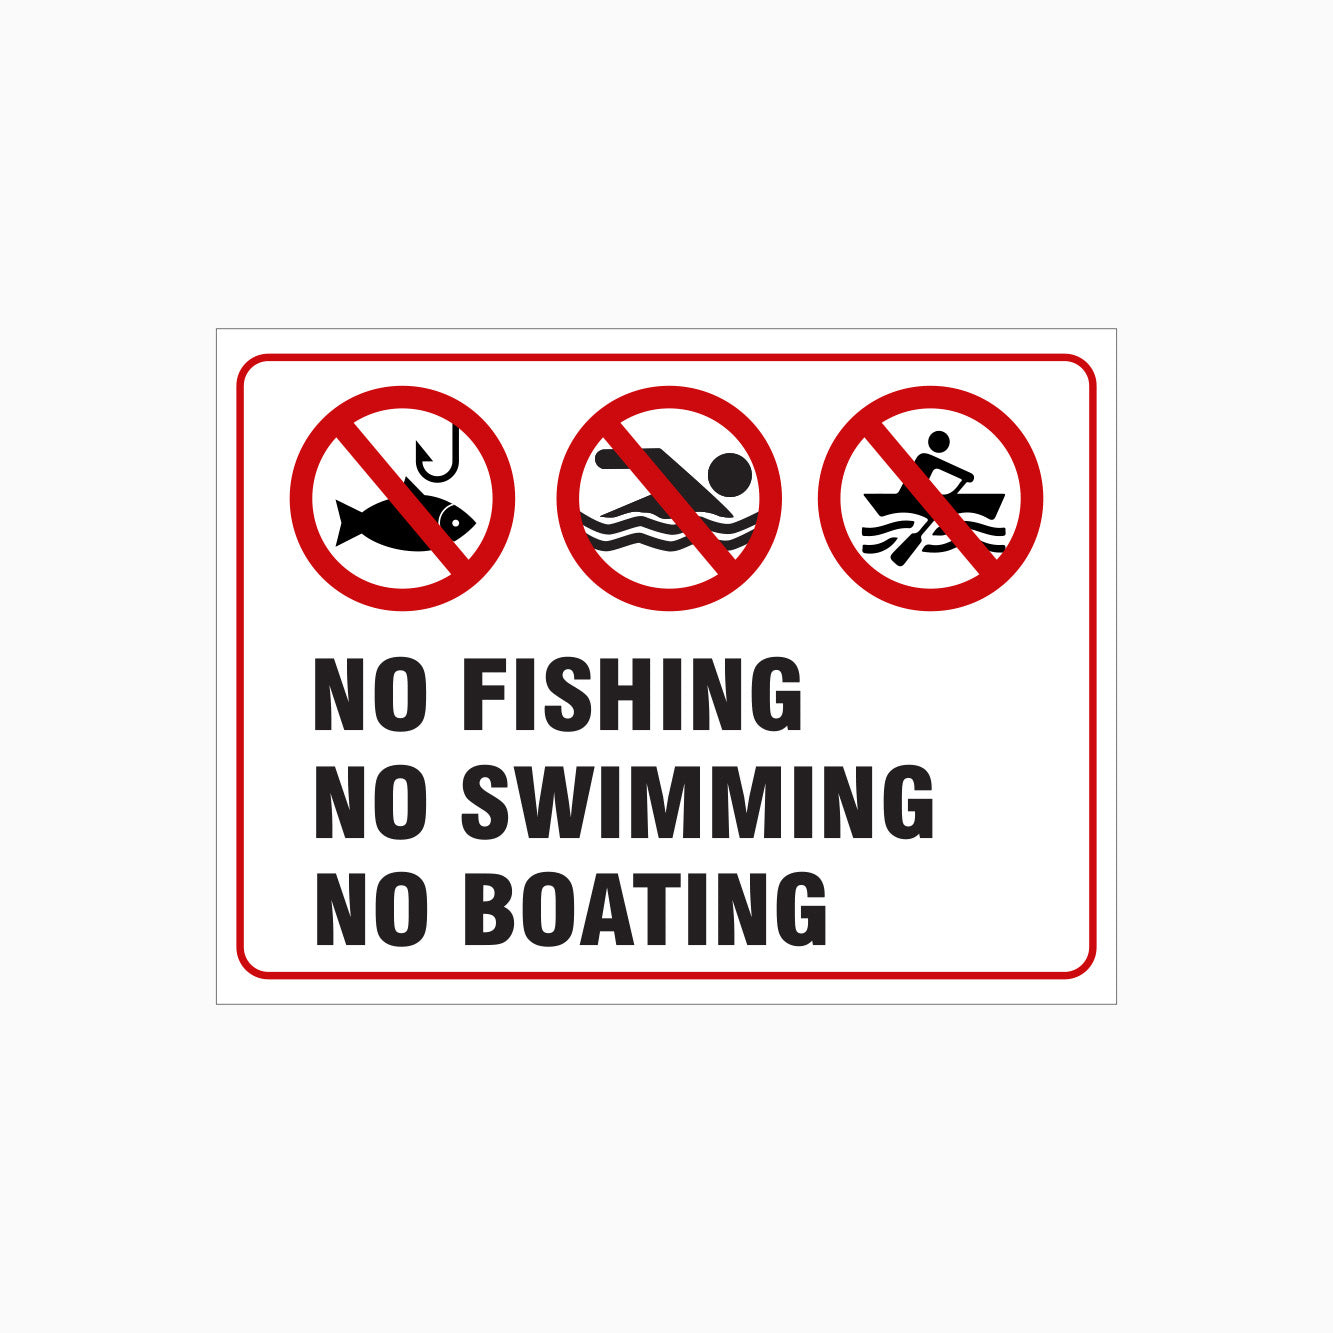 NO FISHING - NO SWIMMING - NO BOATING SIGN